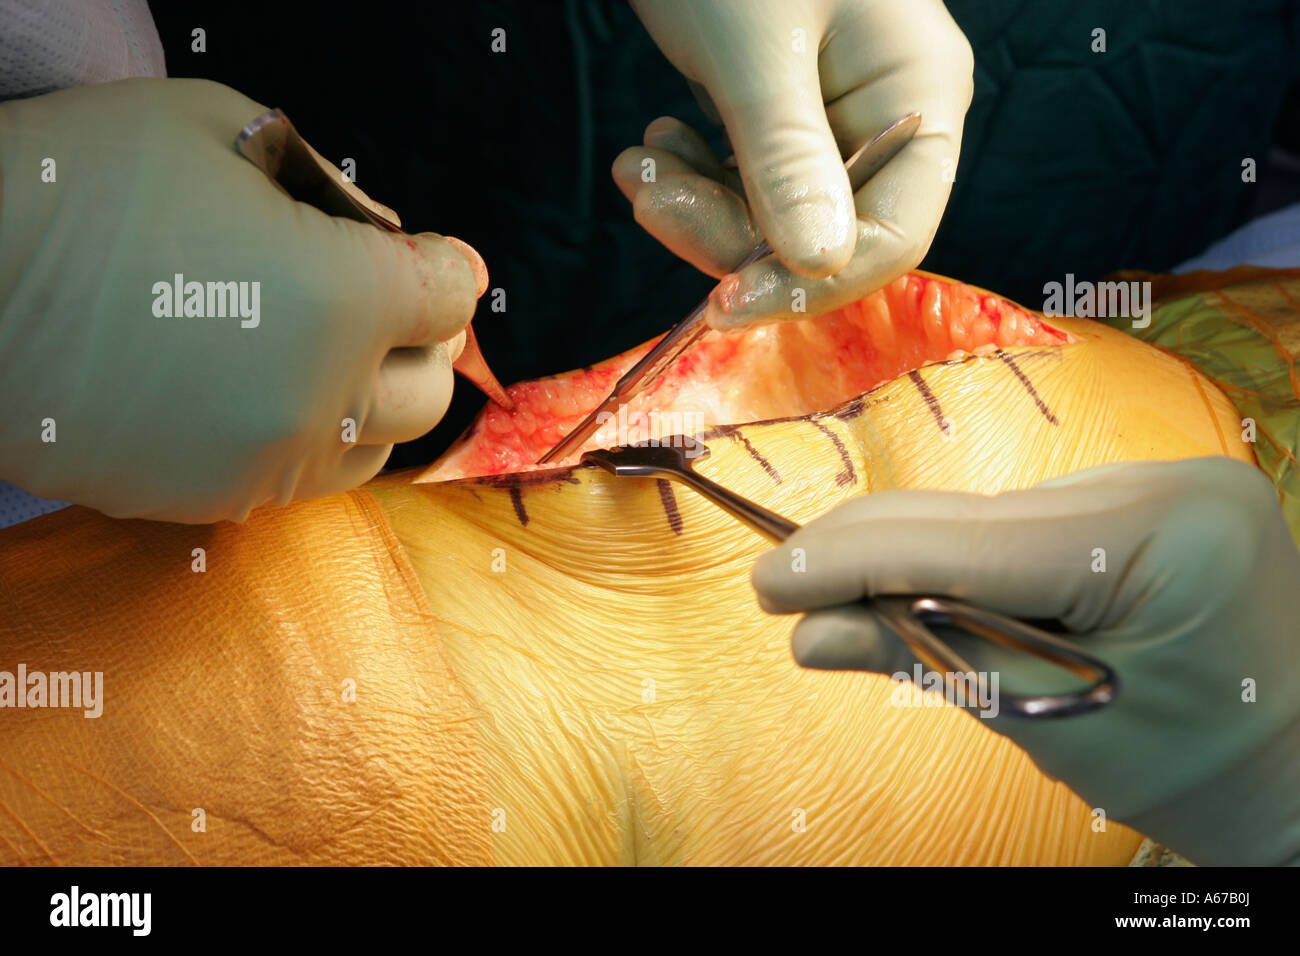 Mains rend chirurgien bistouri dans l'articulation du genou en préparation pour le remplacement prothétique Banque D'Images